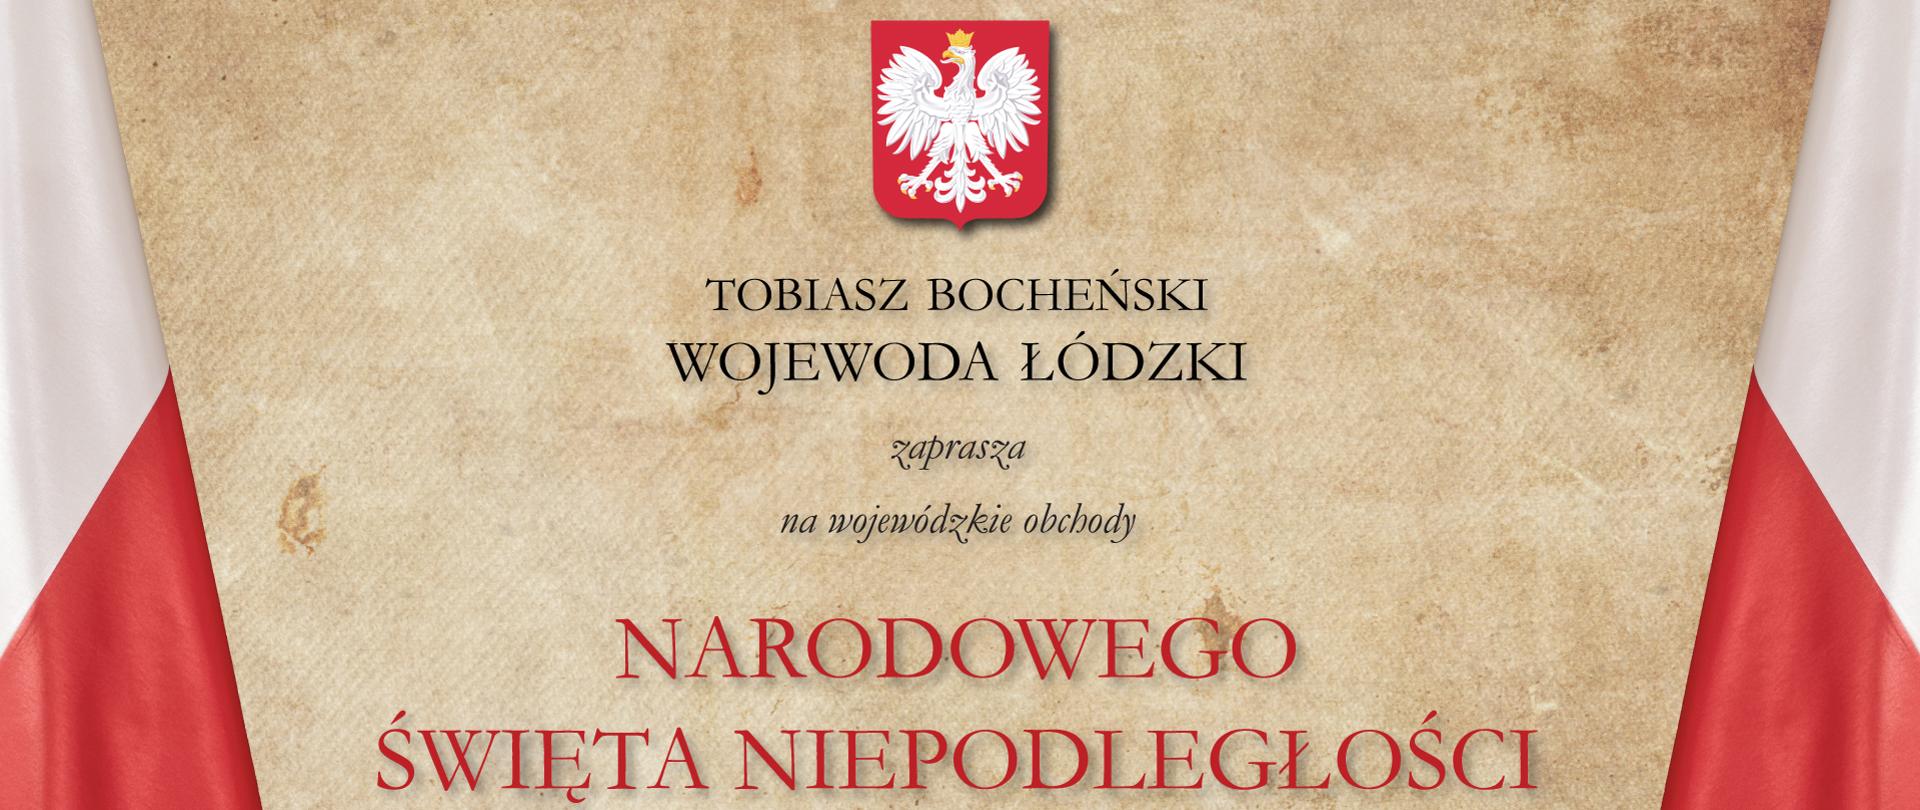 Zaproszenie wojewody łódzkiego Tobiasza Bocheńskiego na obchody Narodowego Święta Niepodległości 11 listopada